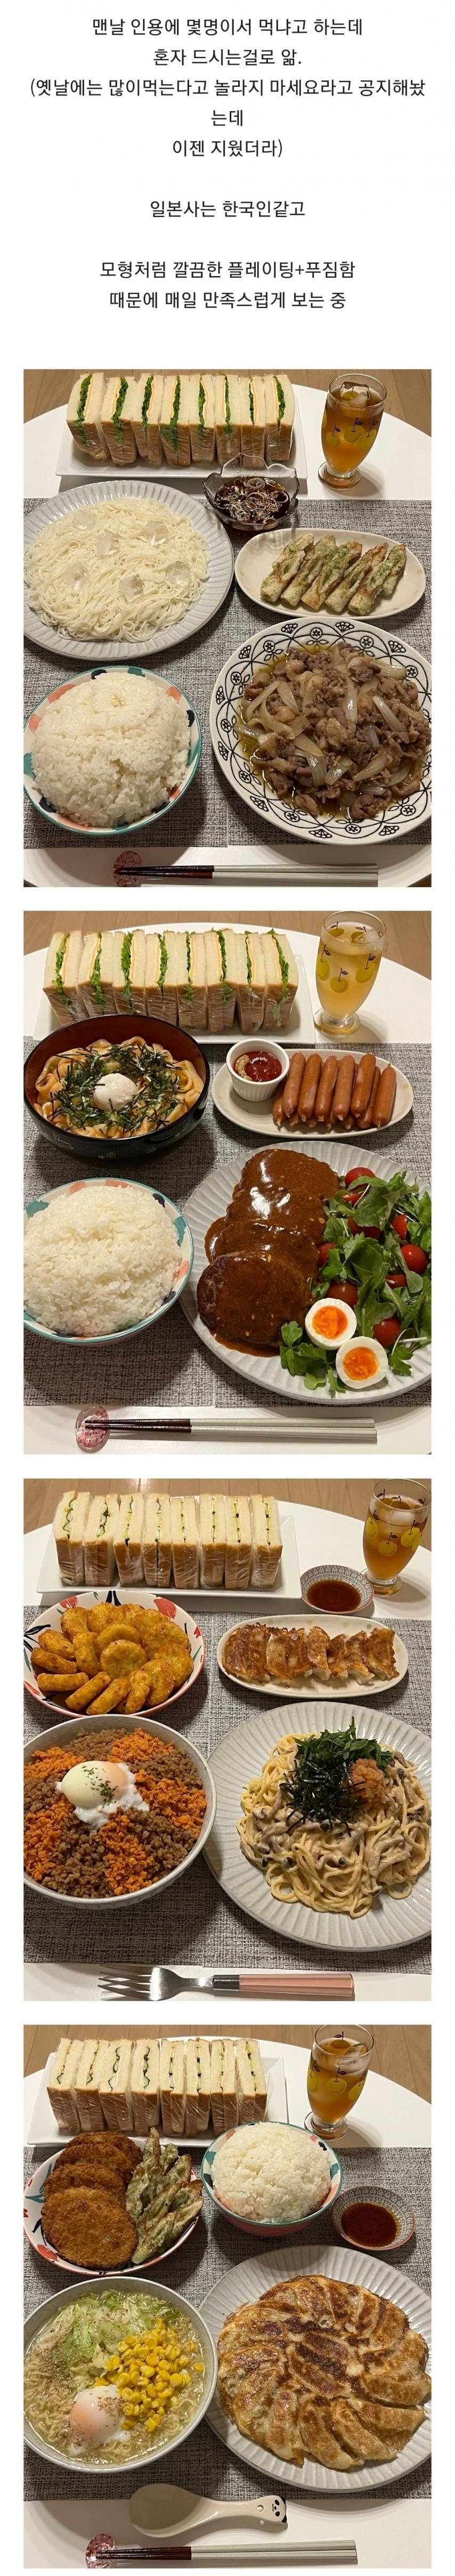 일본에서 엄청 잘 먹고 다니는 한국사람.jpg